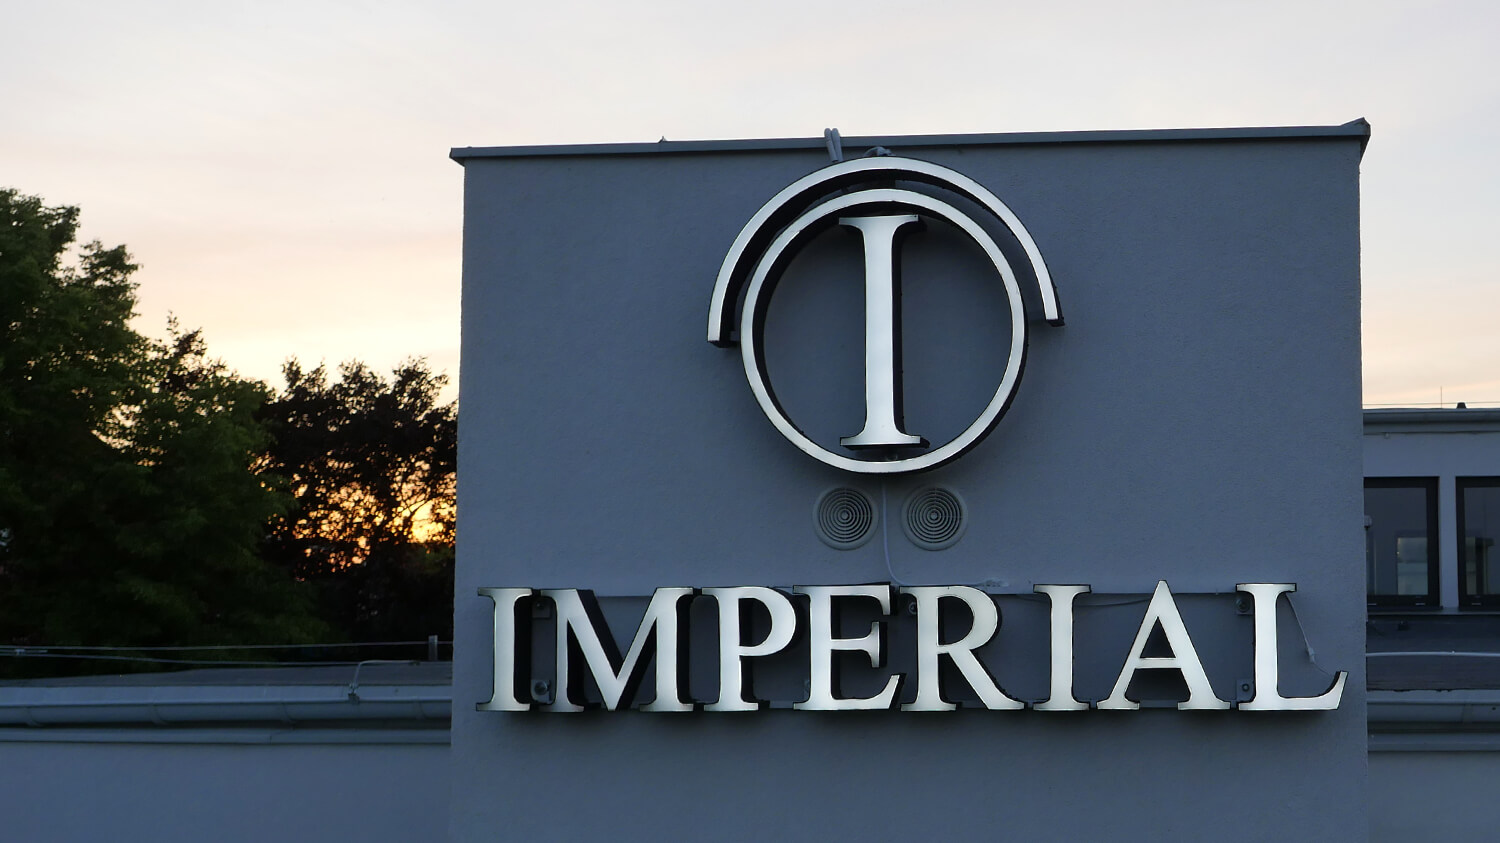 Imperial - Hotel Imperial - Letras LED espaciales en la pared